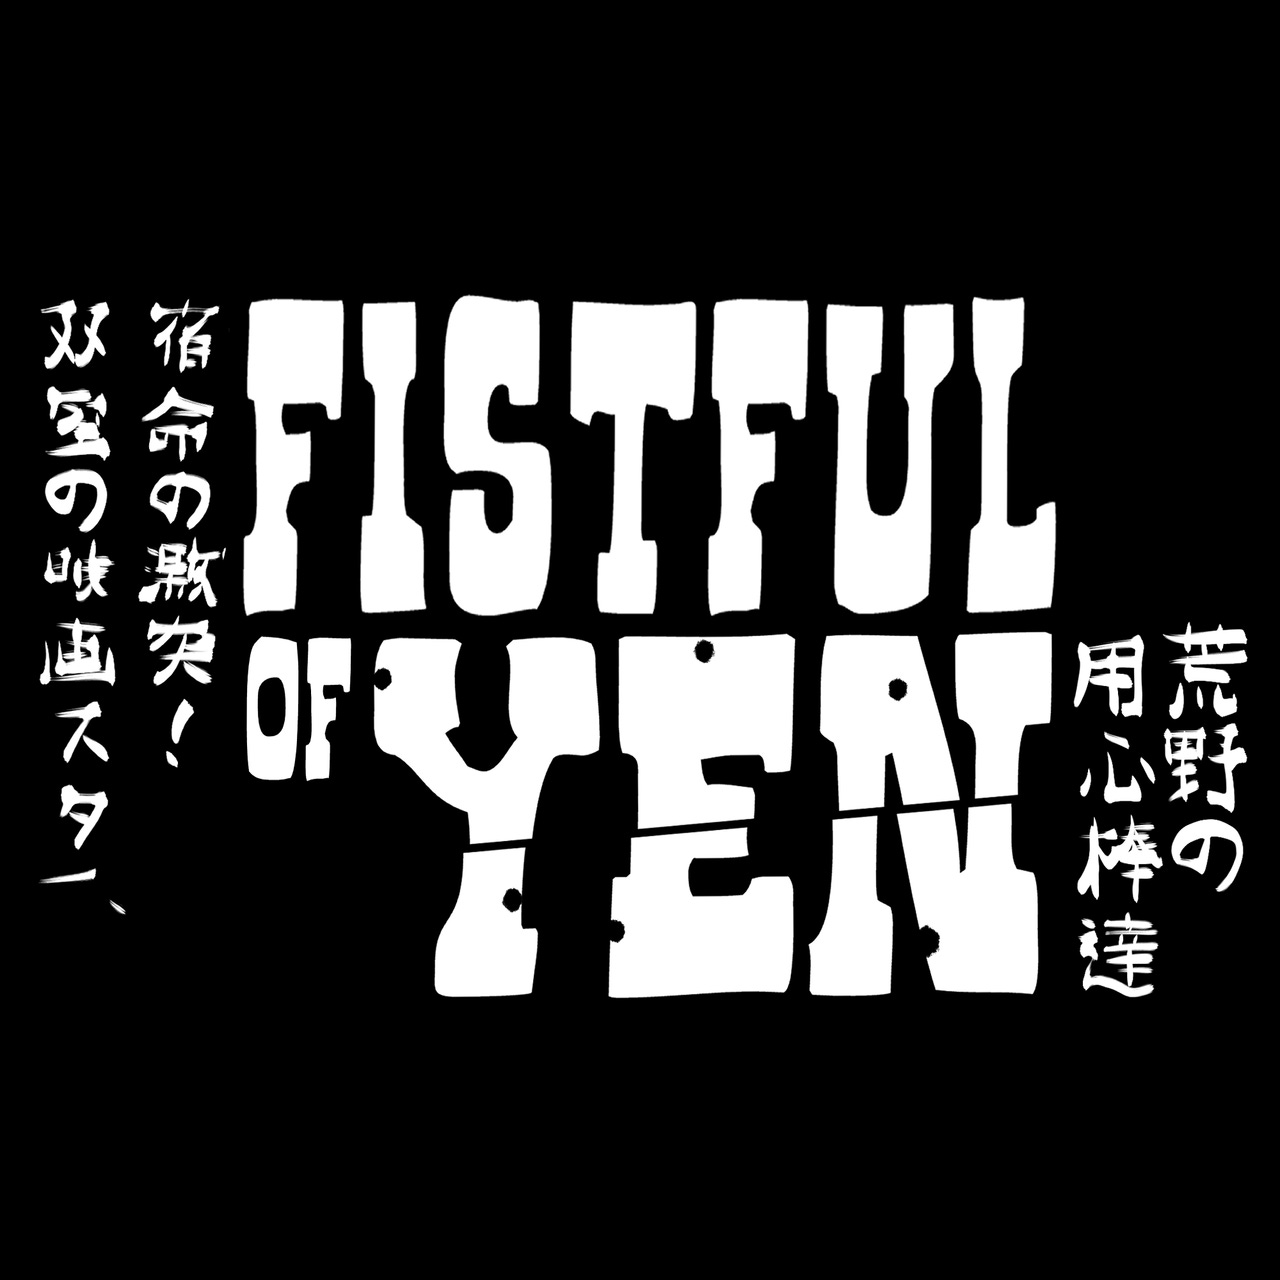 Fistful of Yen